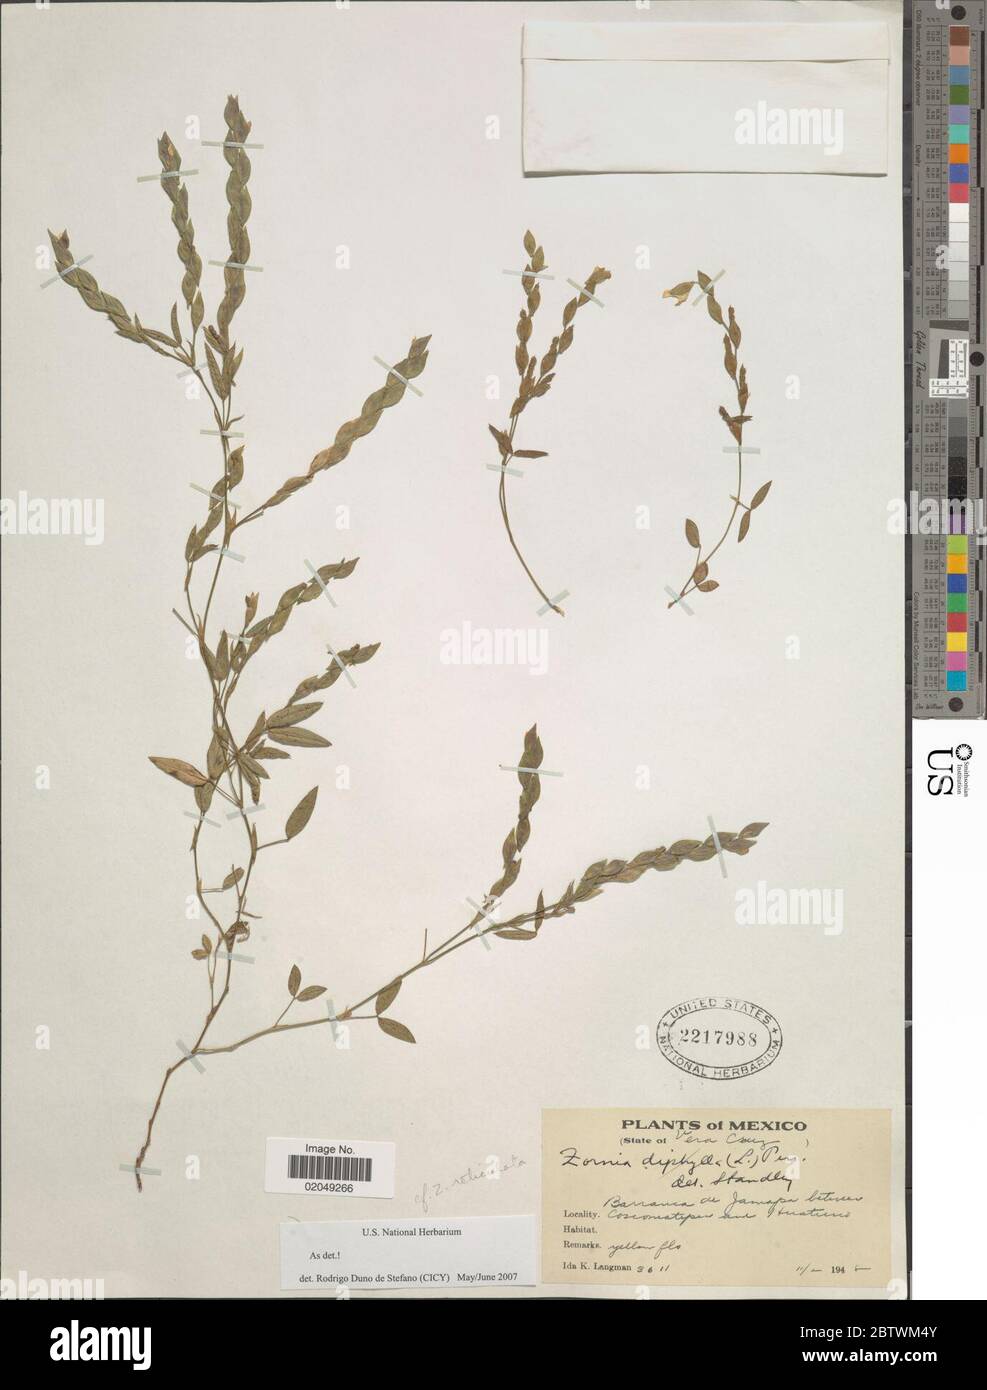 Zornia reticulata Sm. Stock Photo